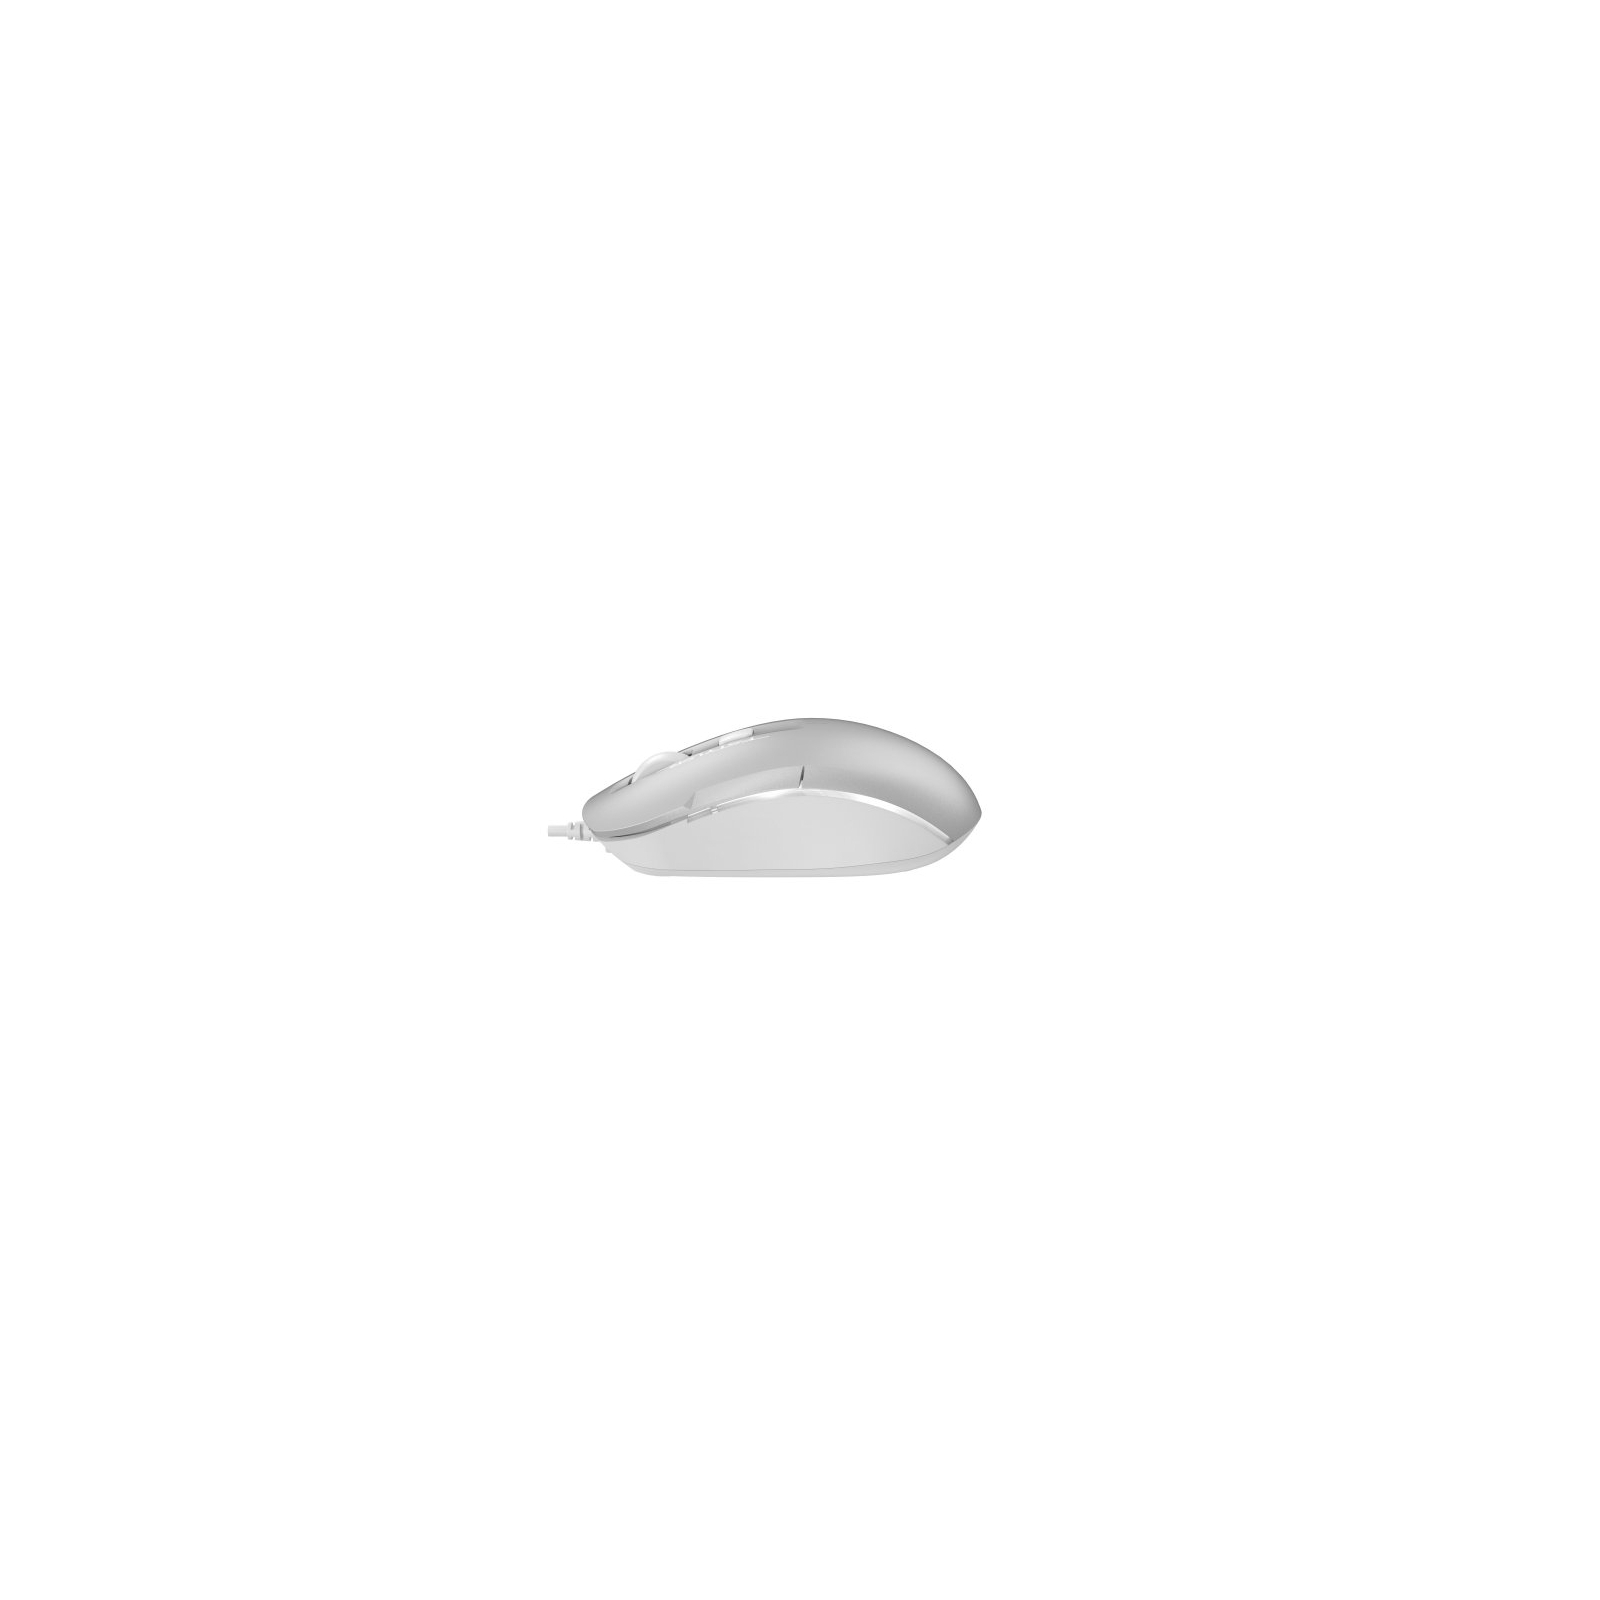 Мышка A4Tech FM26 USB Cafe Latte (4711421991391) изображение 4